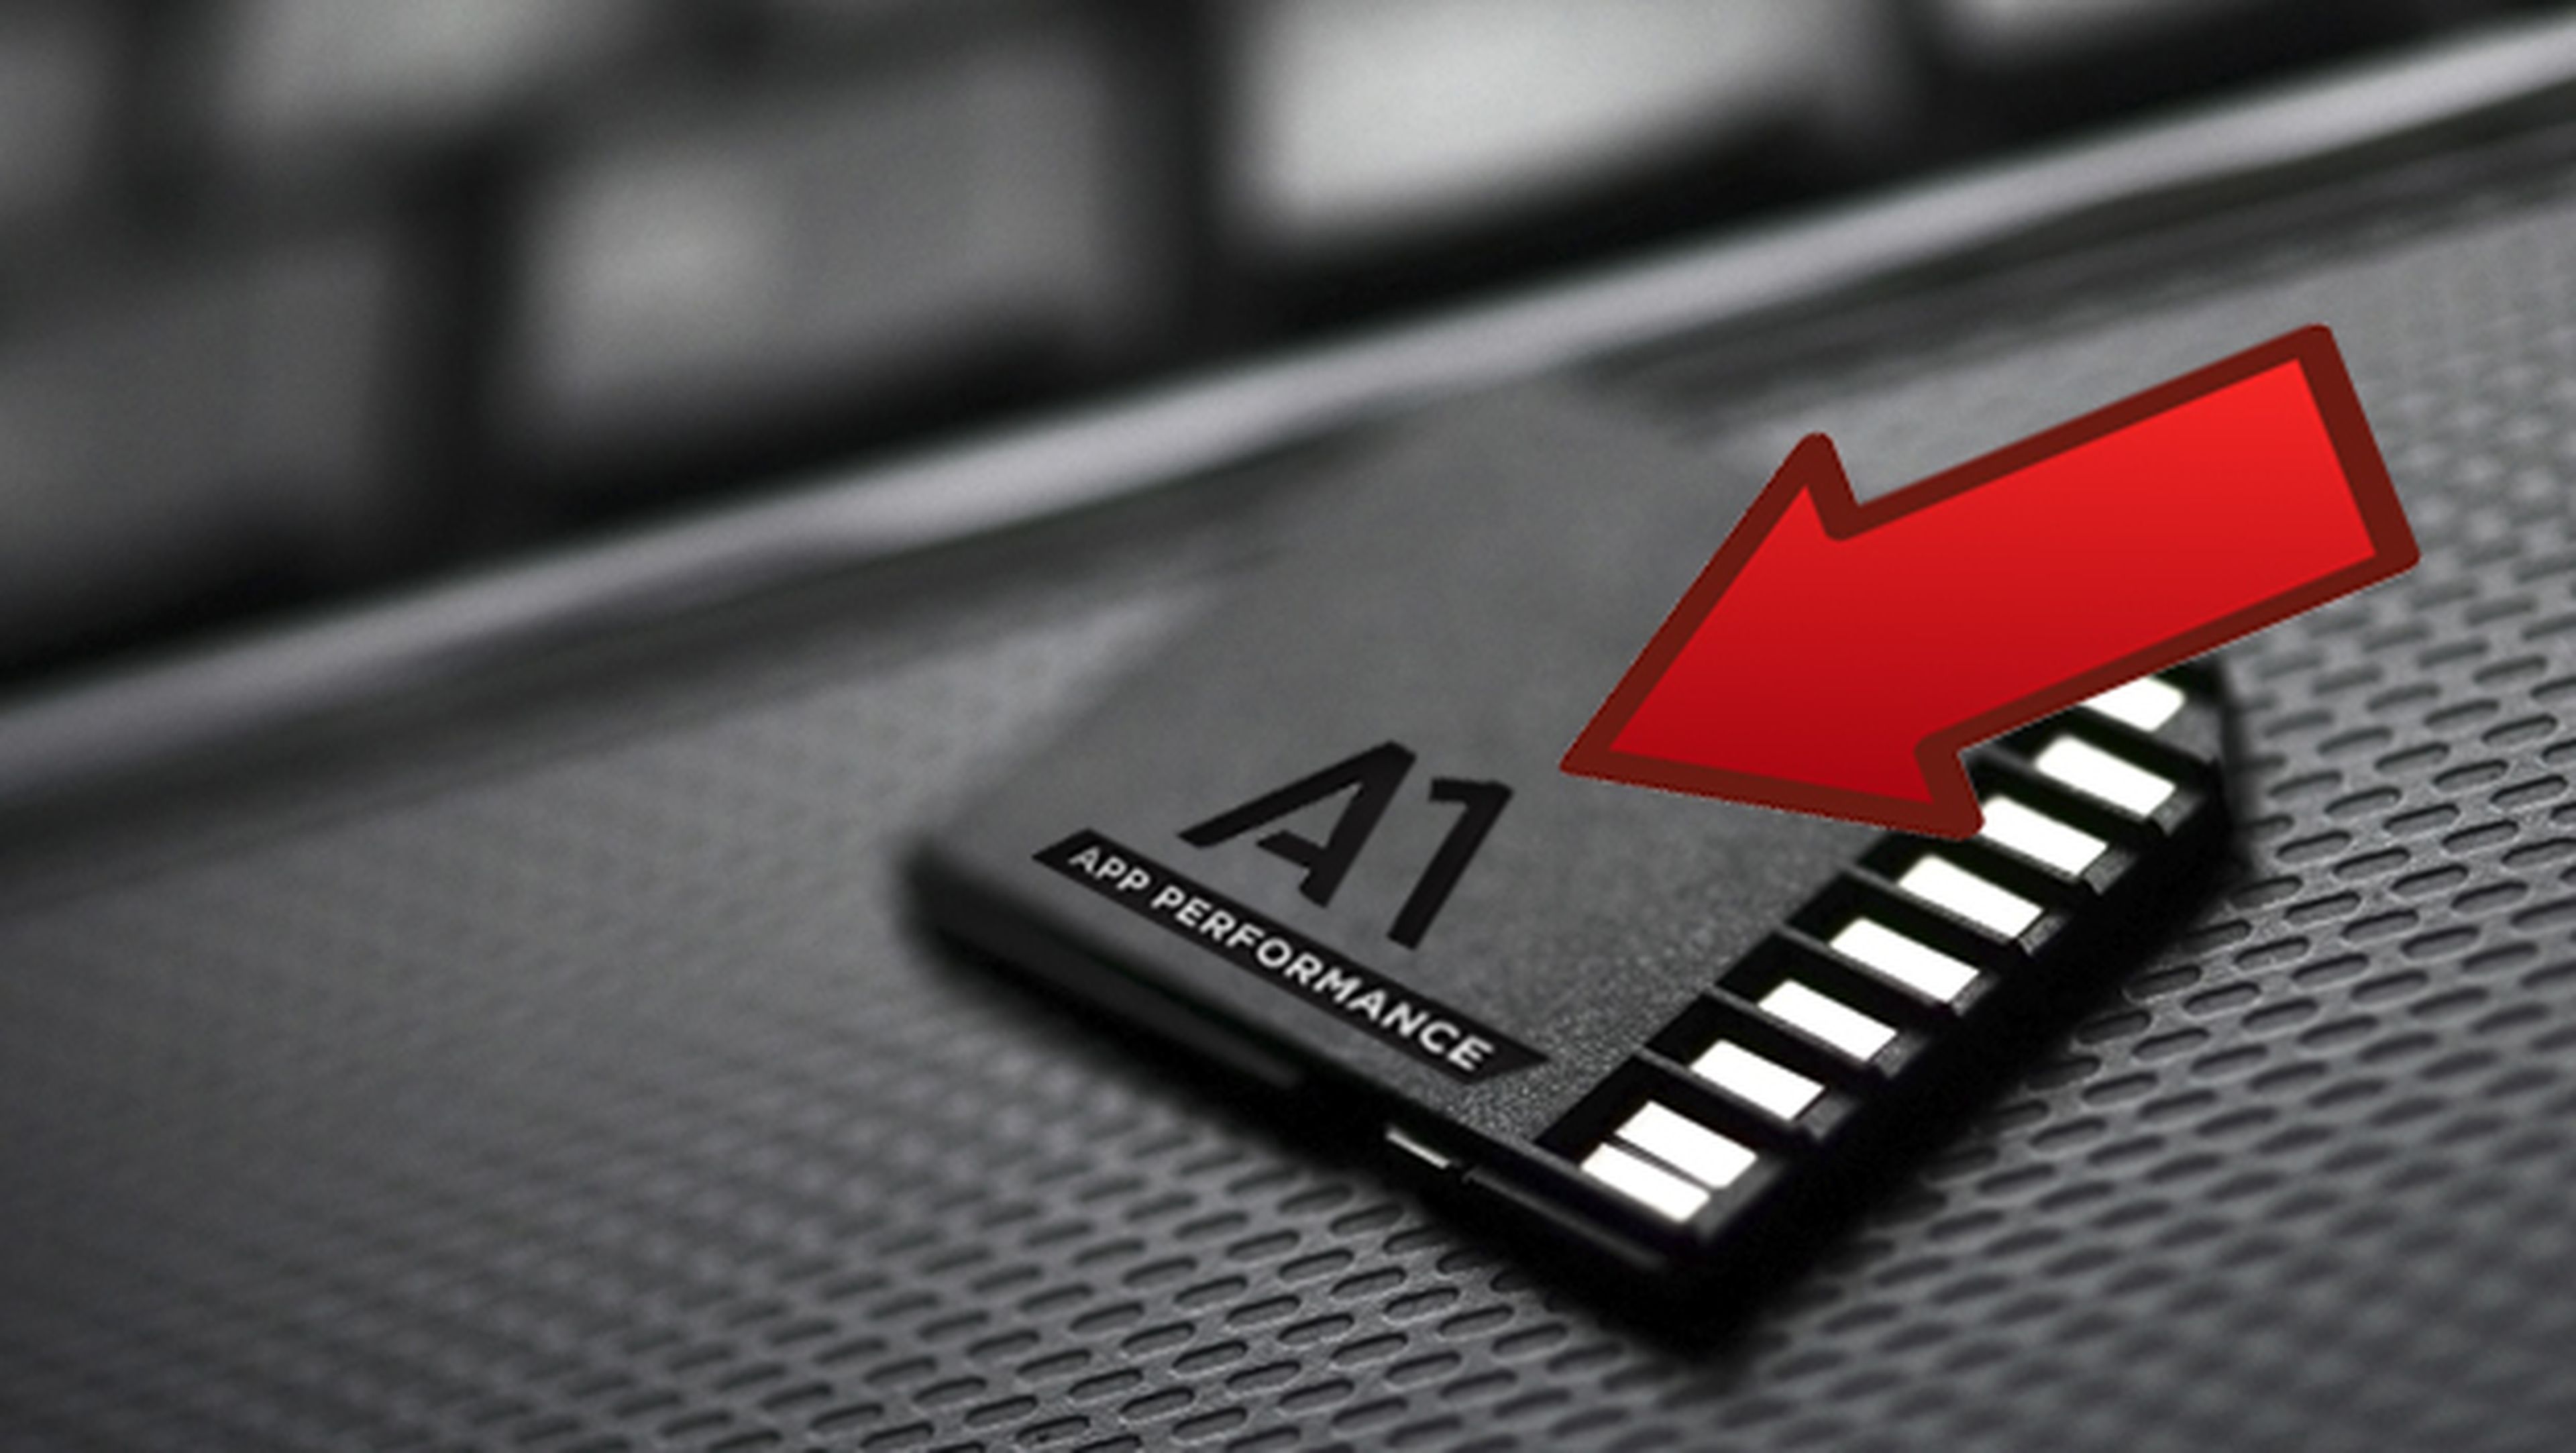 Las tarjetas microSD para móviles Android ahora traerán el símbolo A1